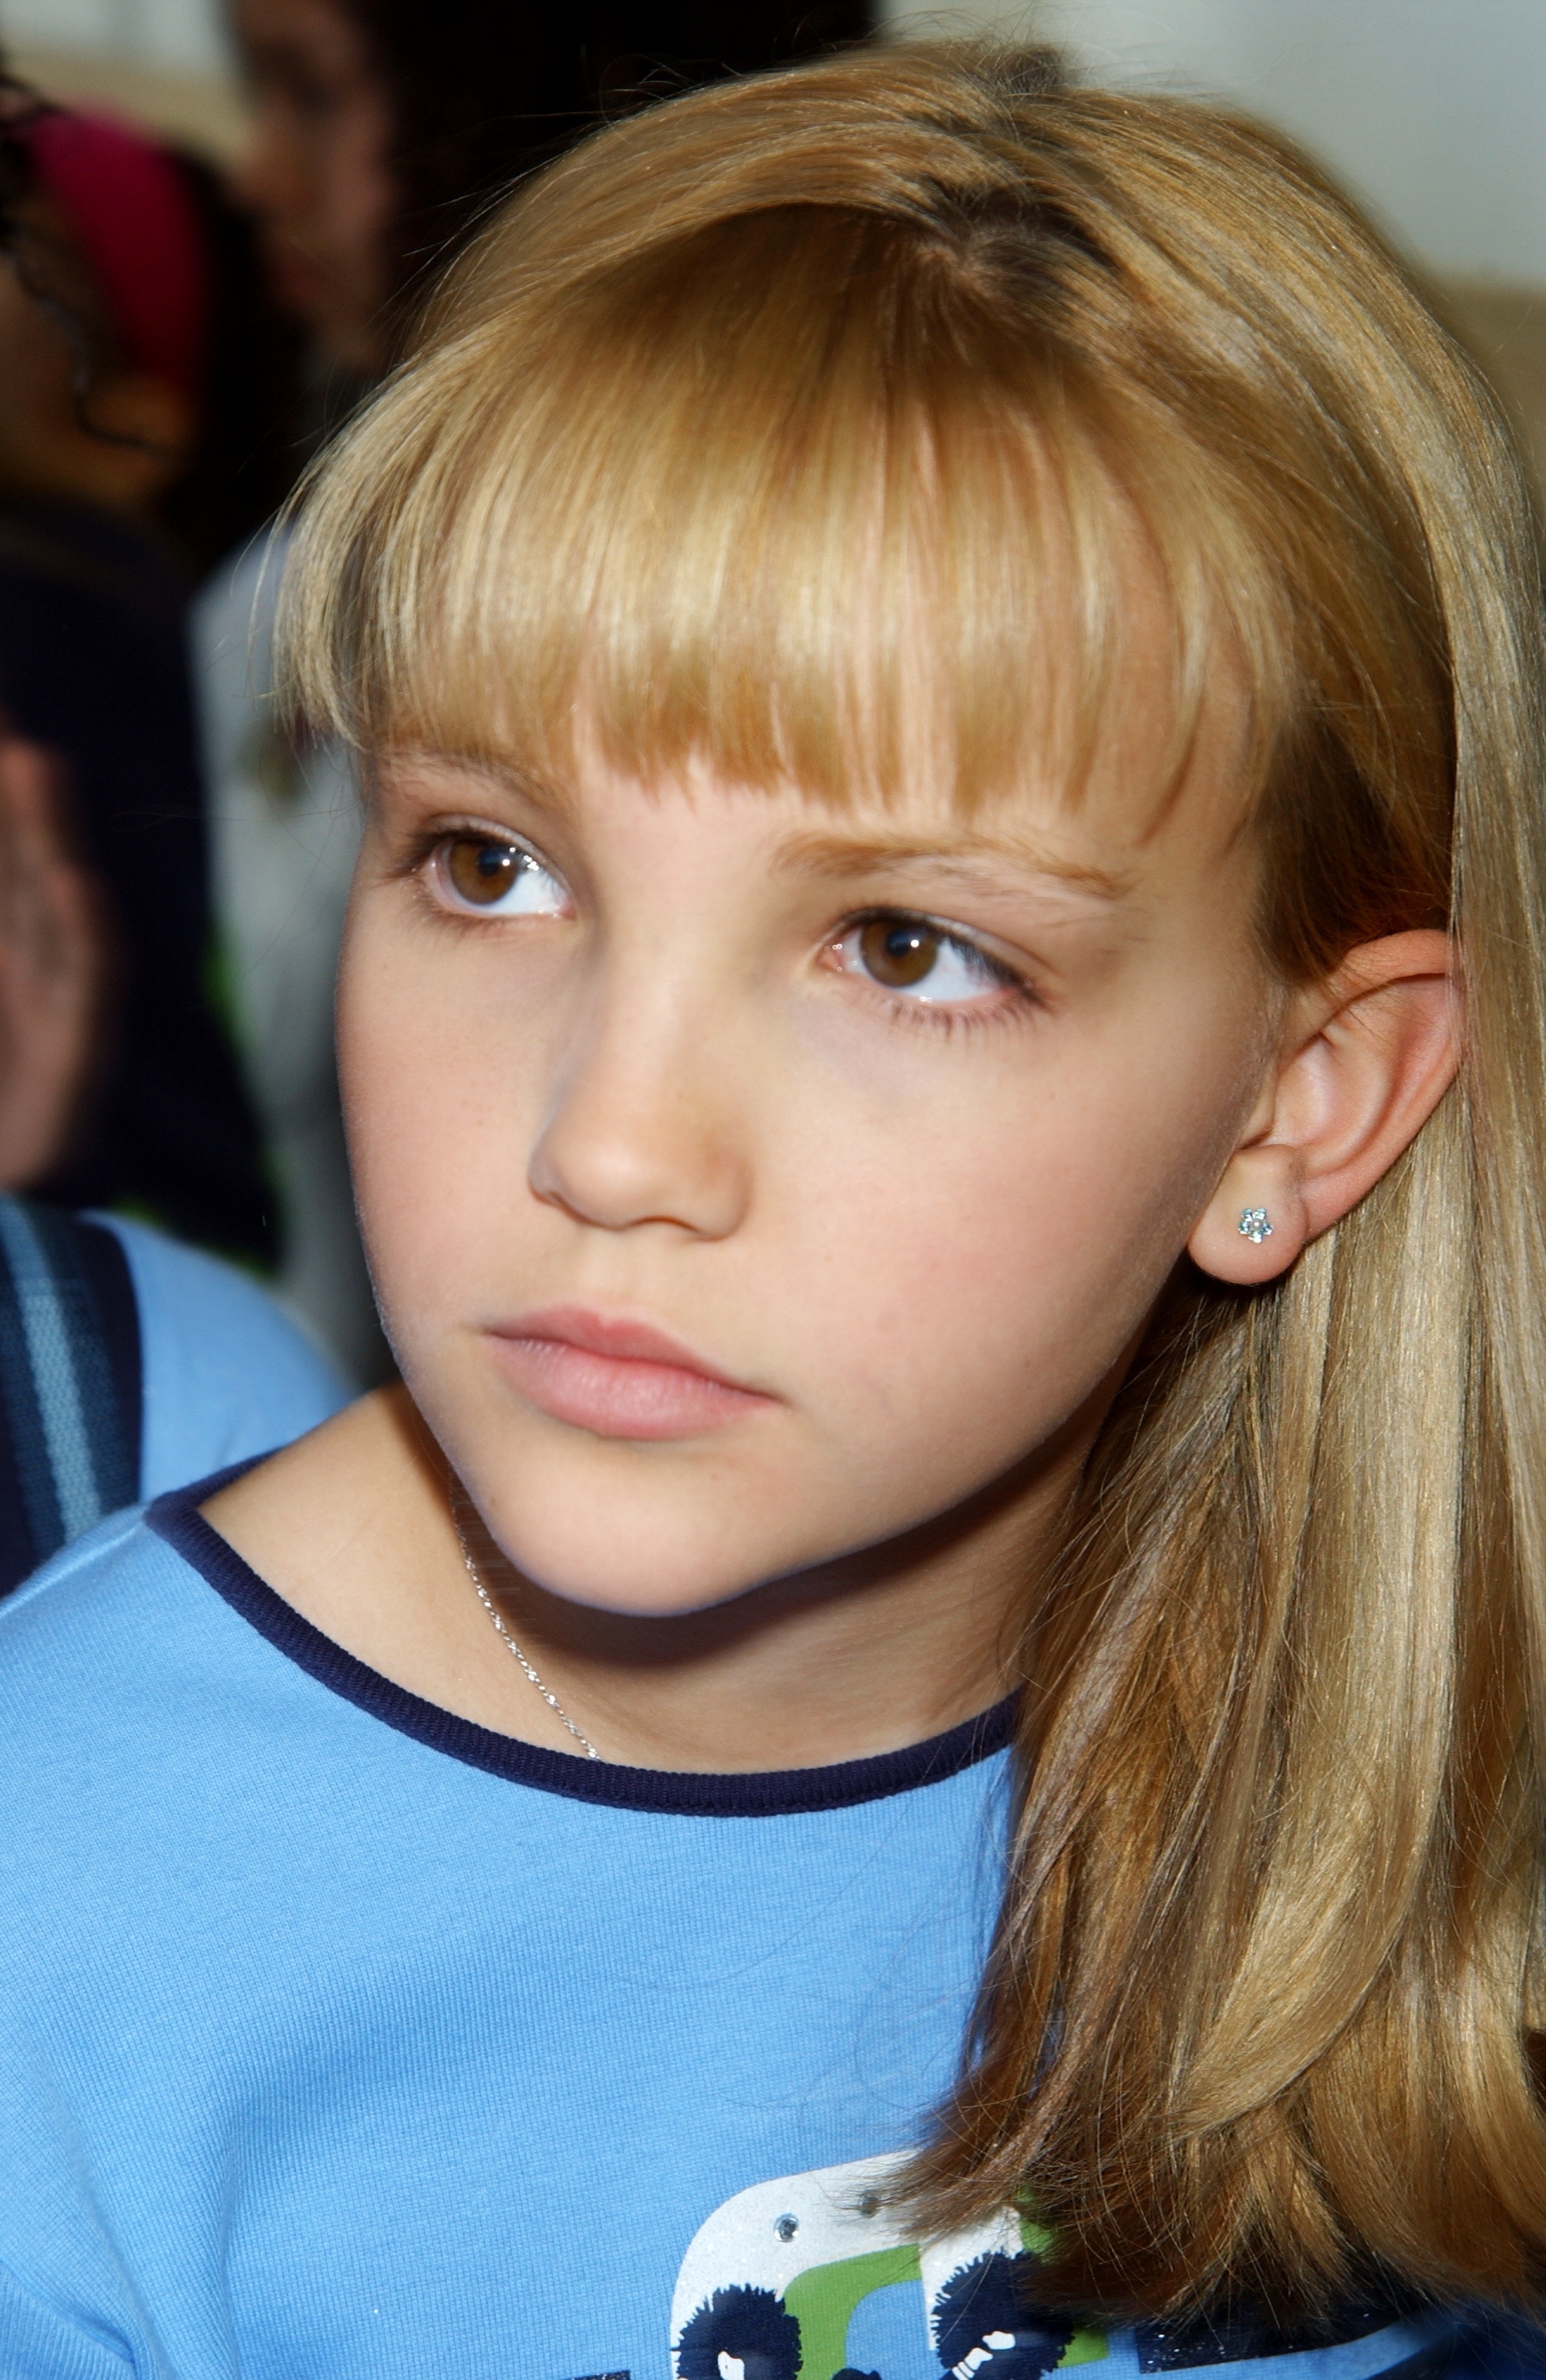 A closeup of a child Jamie Lynn Spears